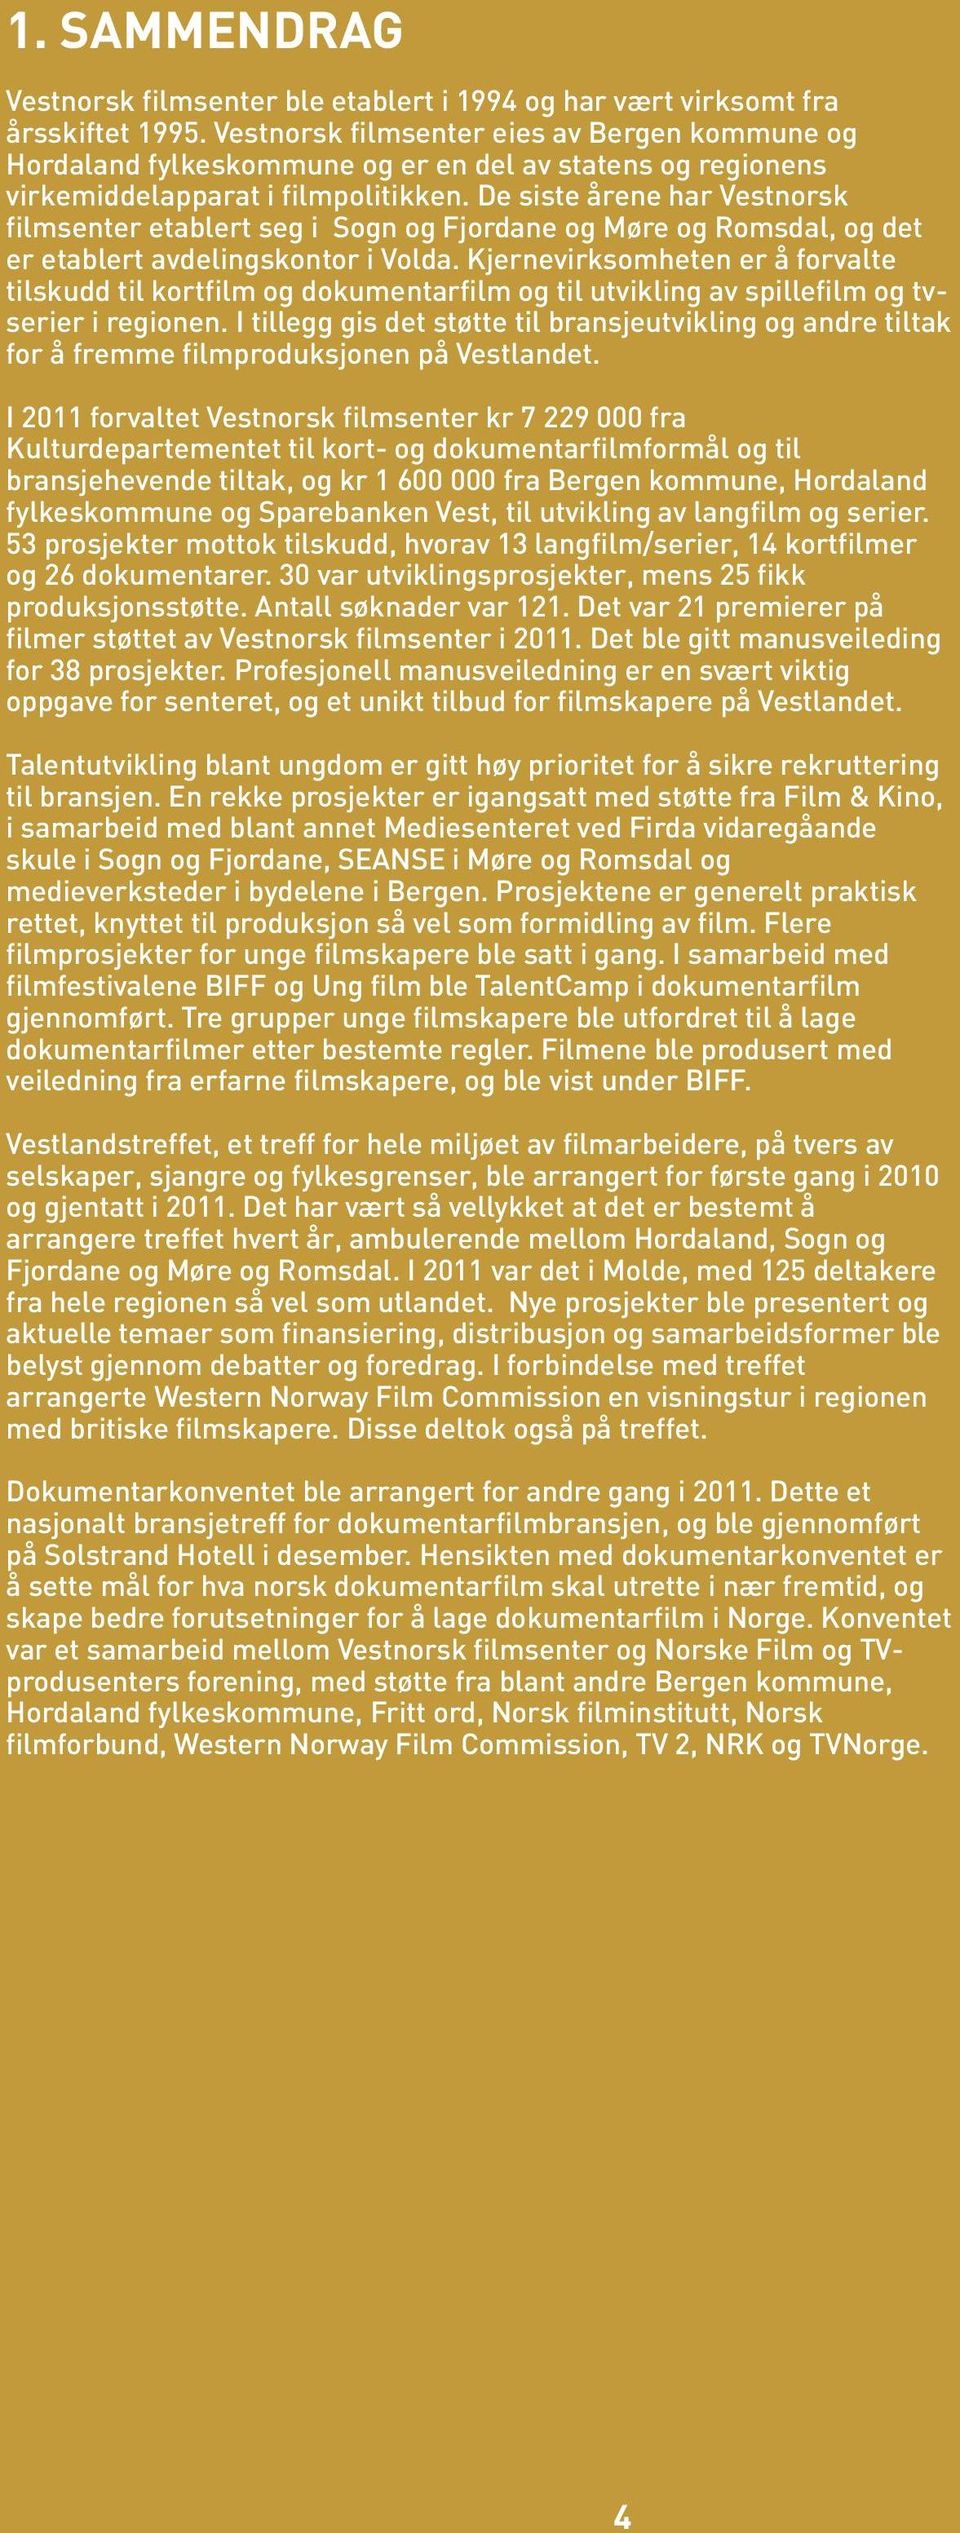 De siste årene har Vestnorsk filmsenter etablert seg i Sogn og Fjordane og Møre og Romsdal, og det er etablert avdelingskontor i Volda.